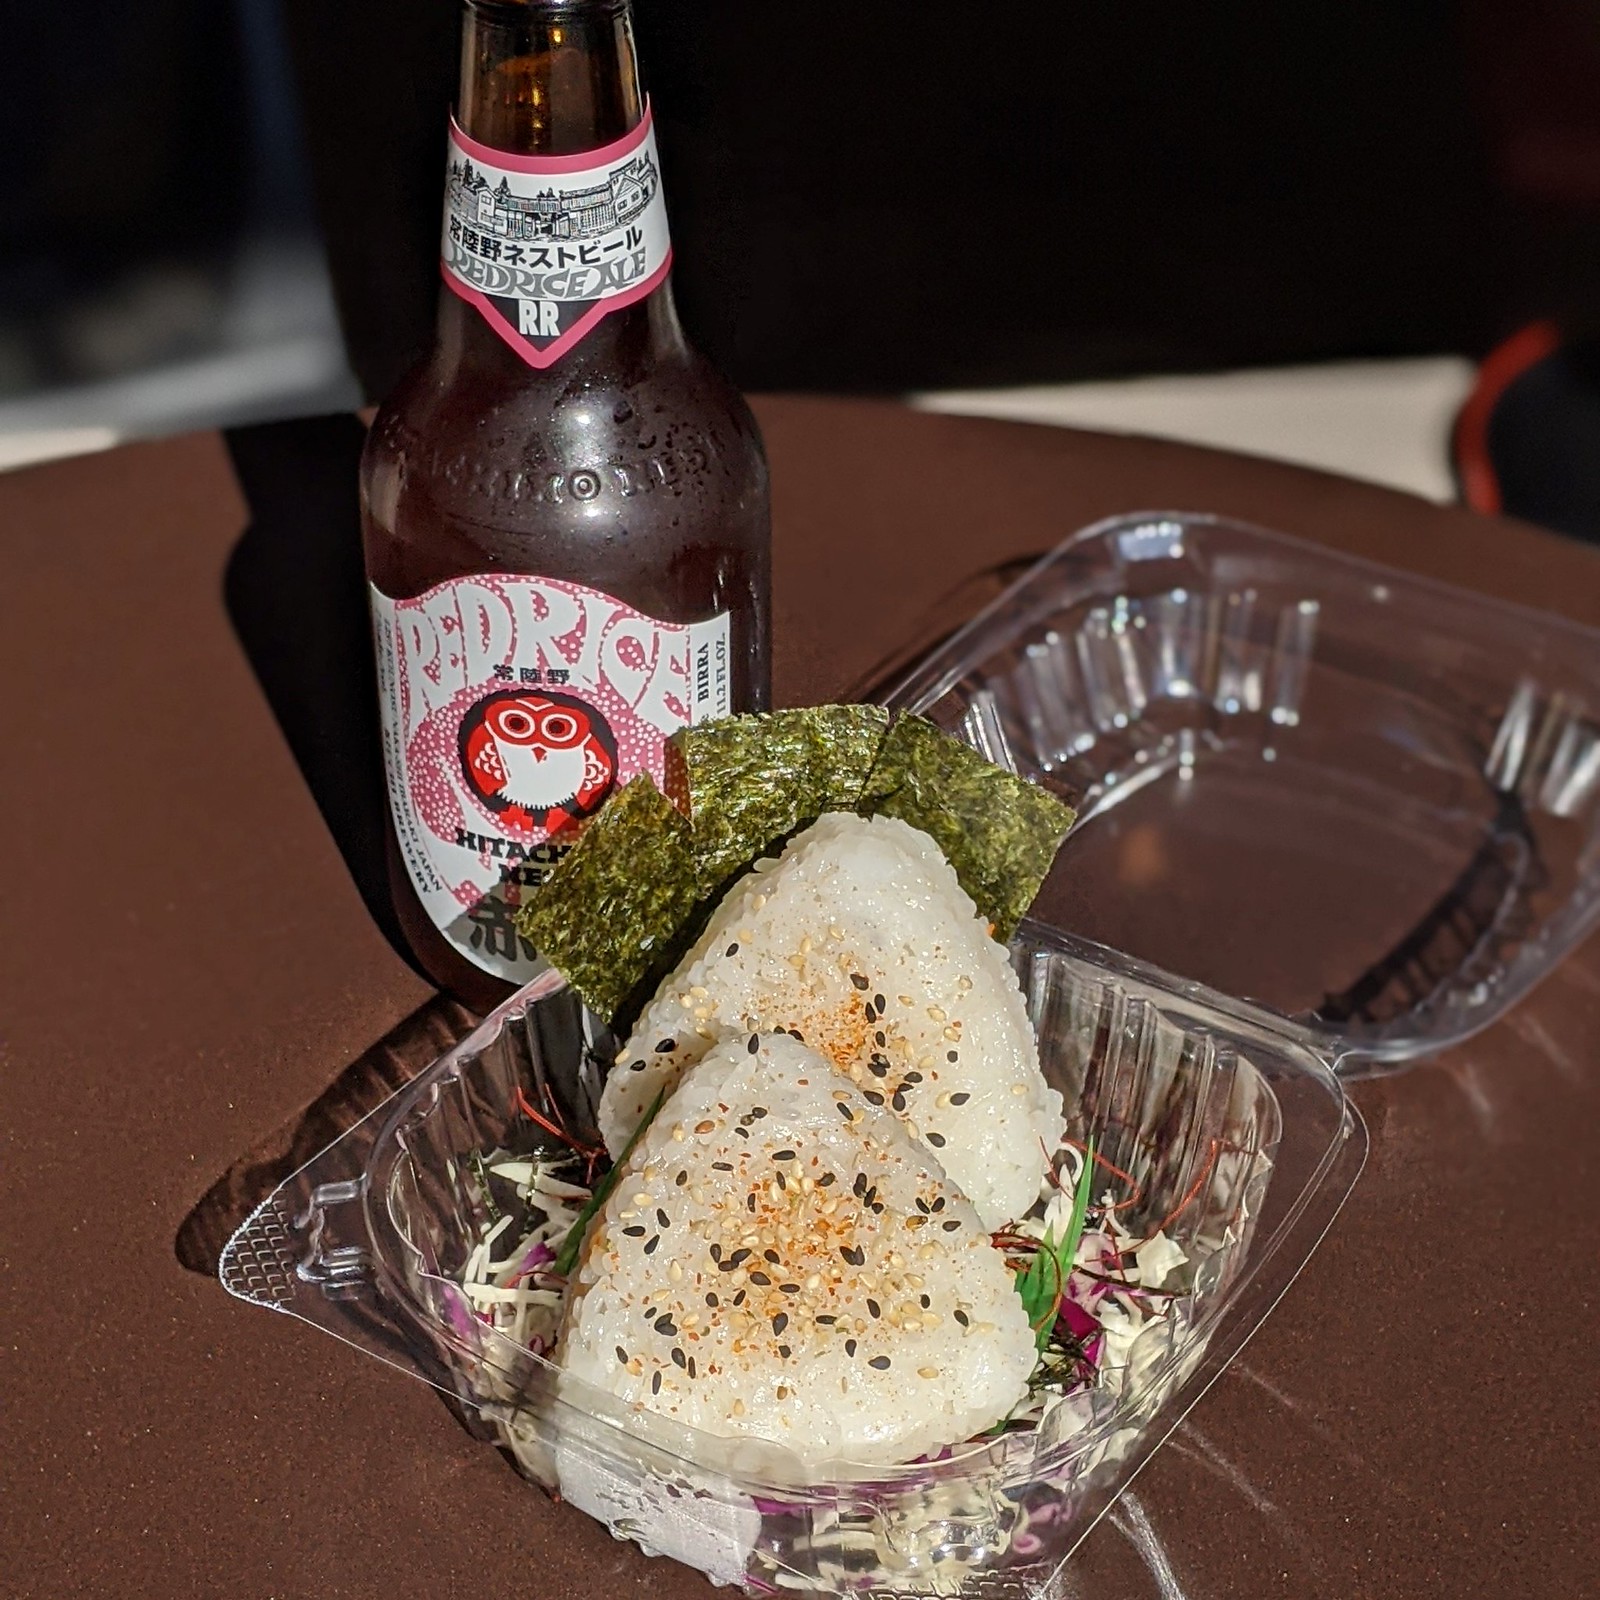 Daily Onigiri & Red Rice Beer